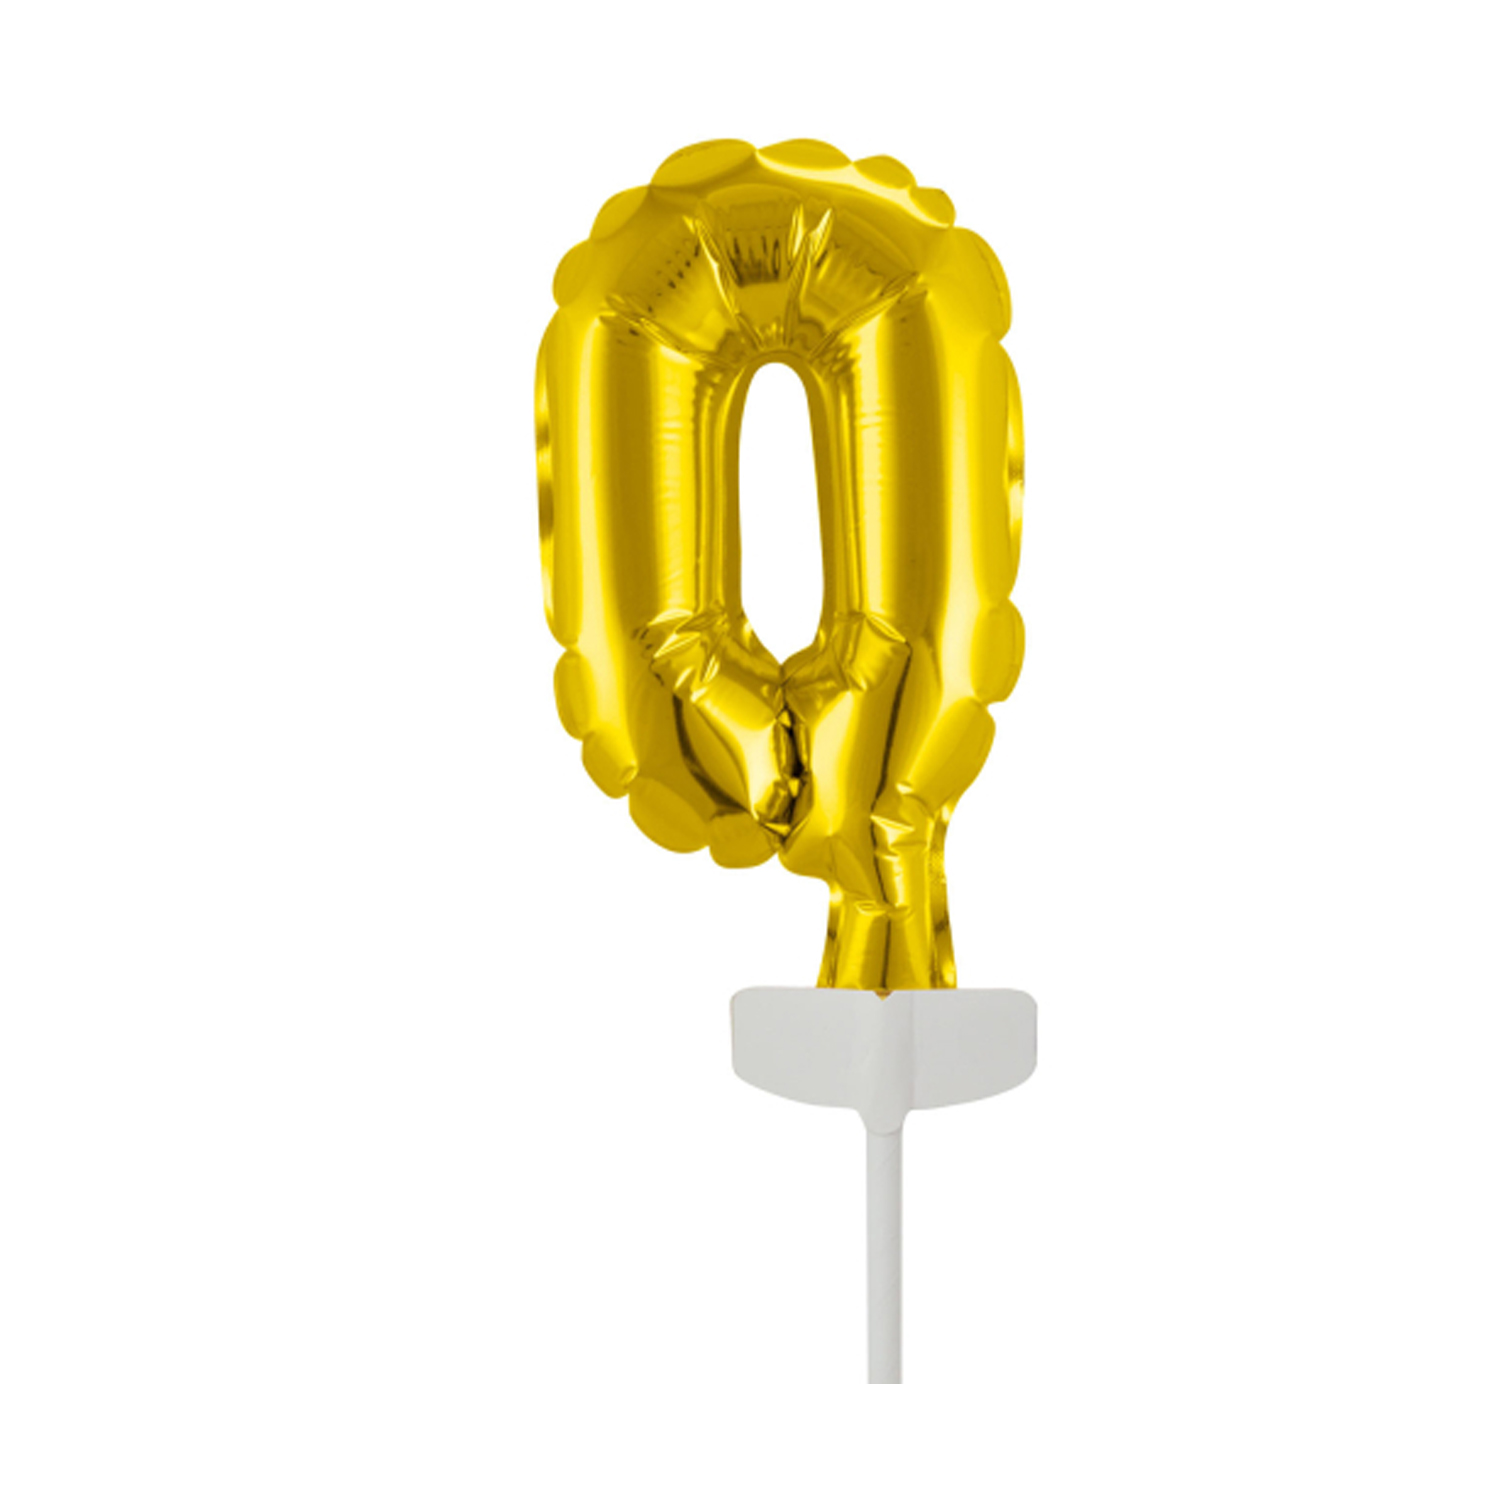 NEU Folienballon Cake Topper Zahl 0 Gold, ca. 13 cm